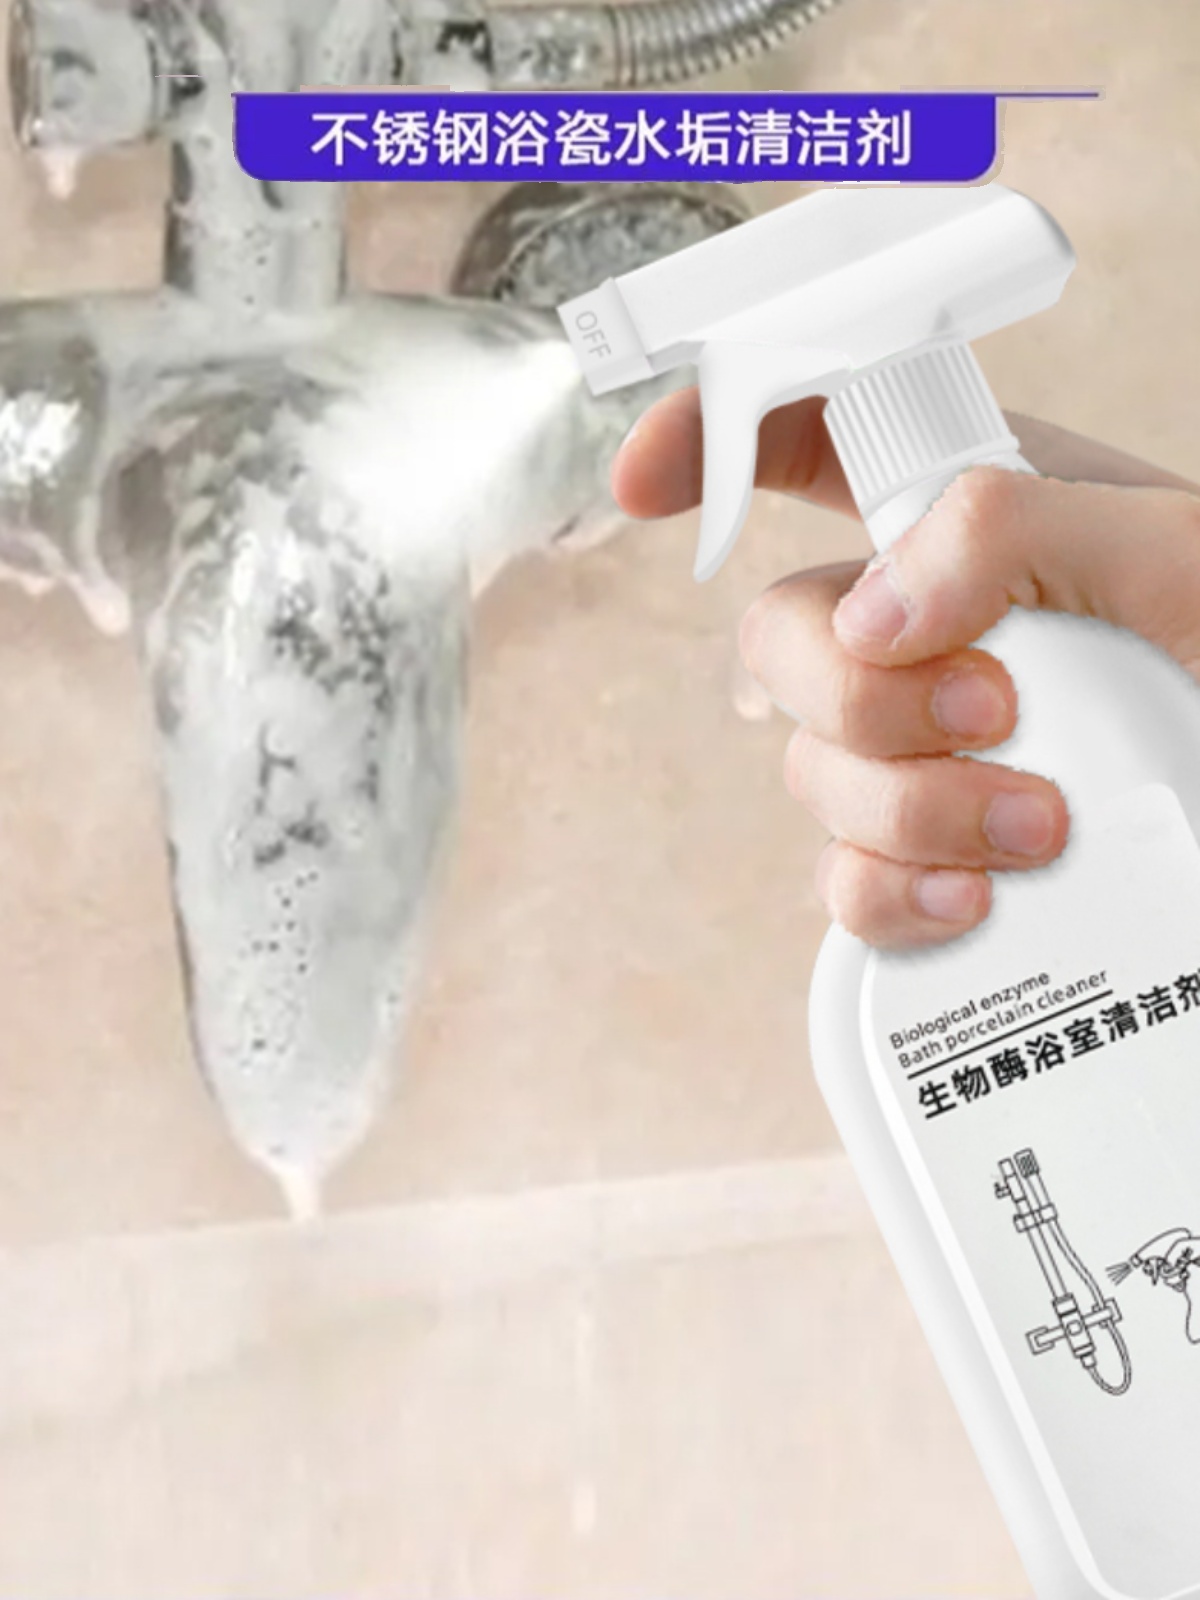 【两瓶装】瓷砖浴室清洁剂家用浴缸擦玻璃多功能清洗剂卫生间厕所